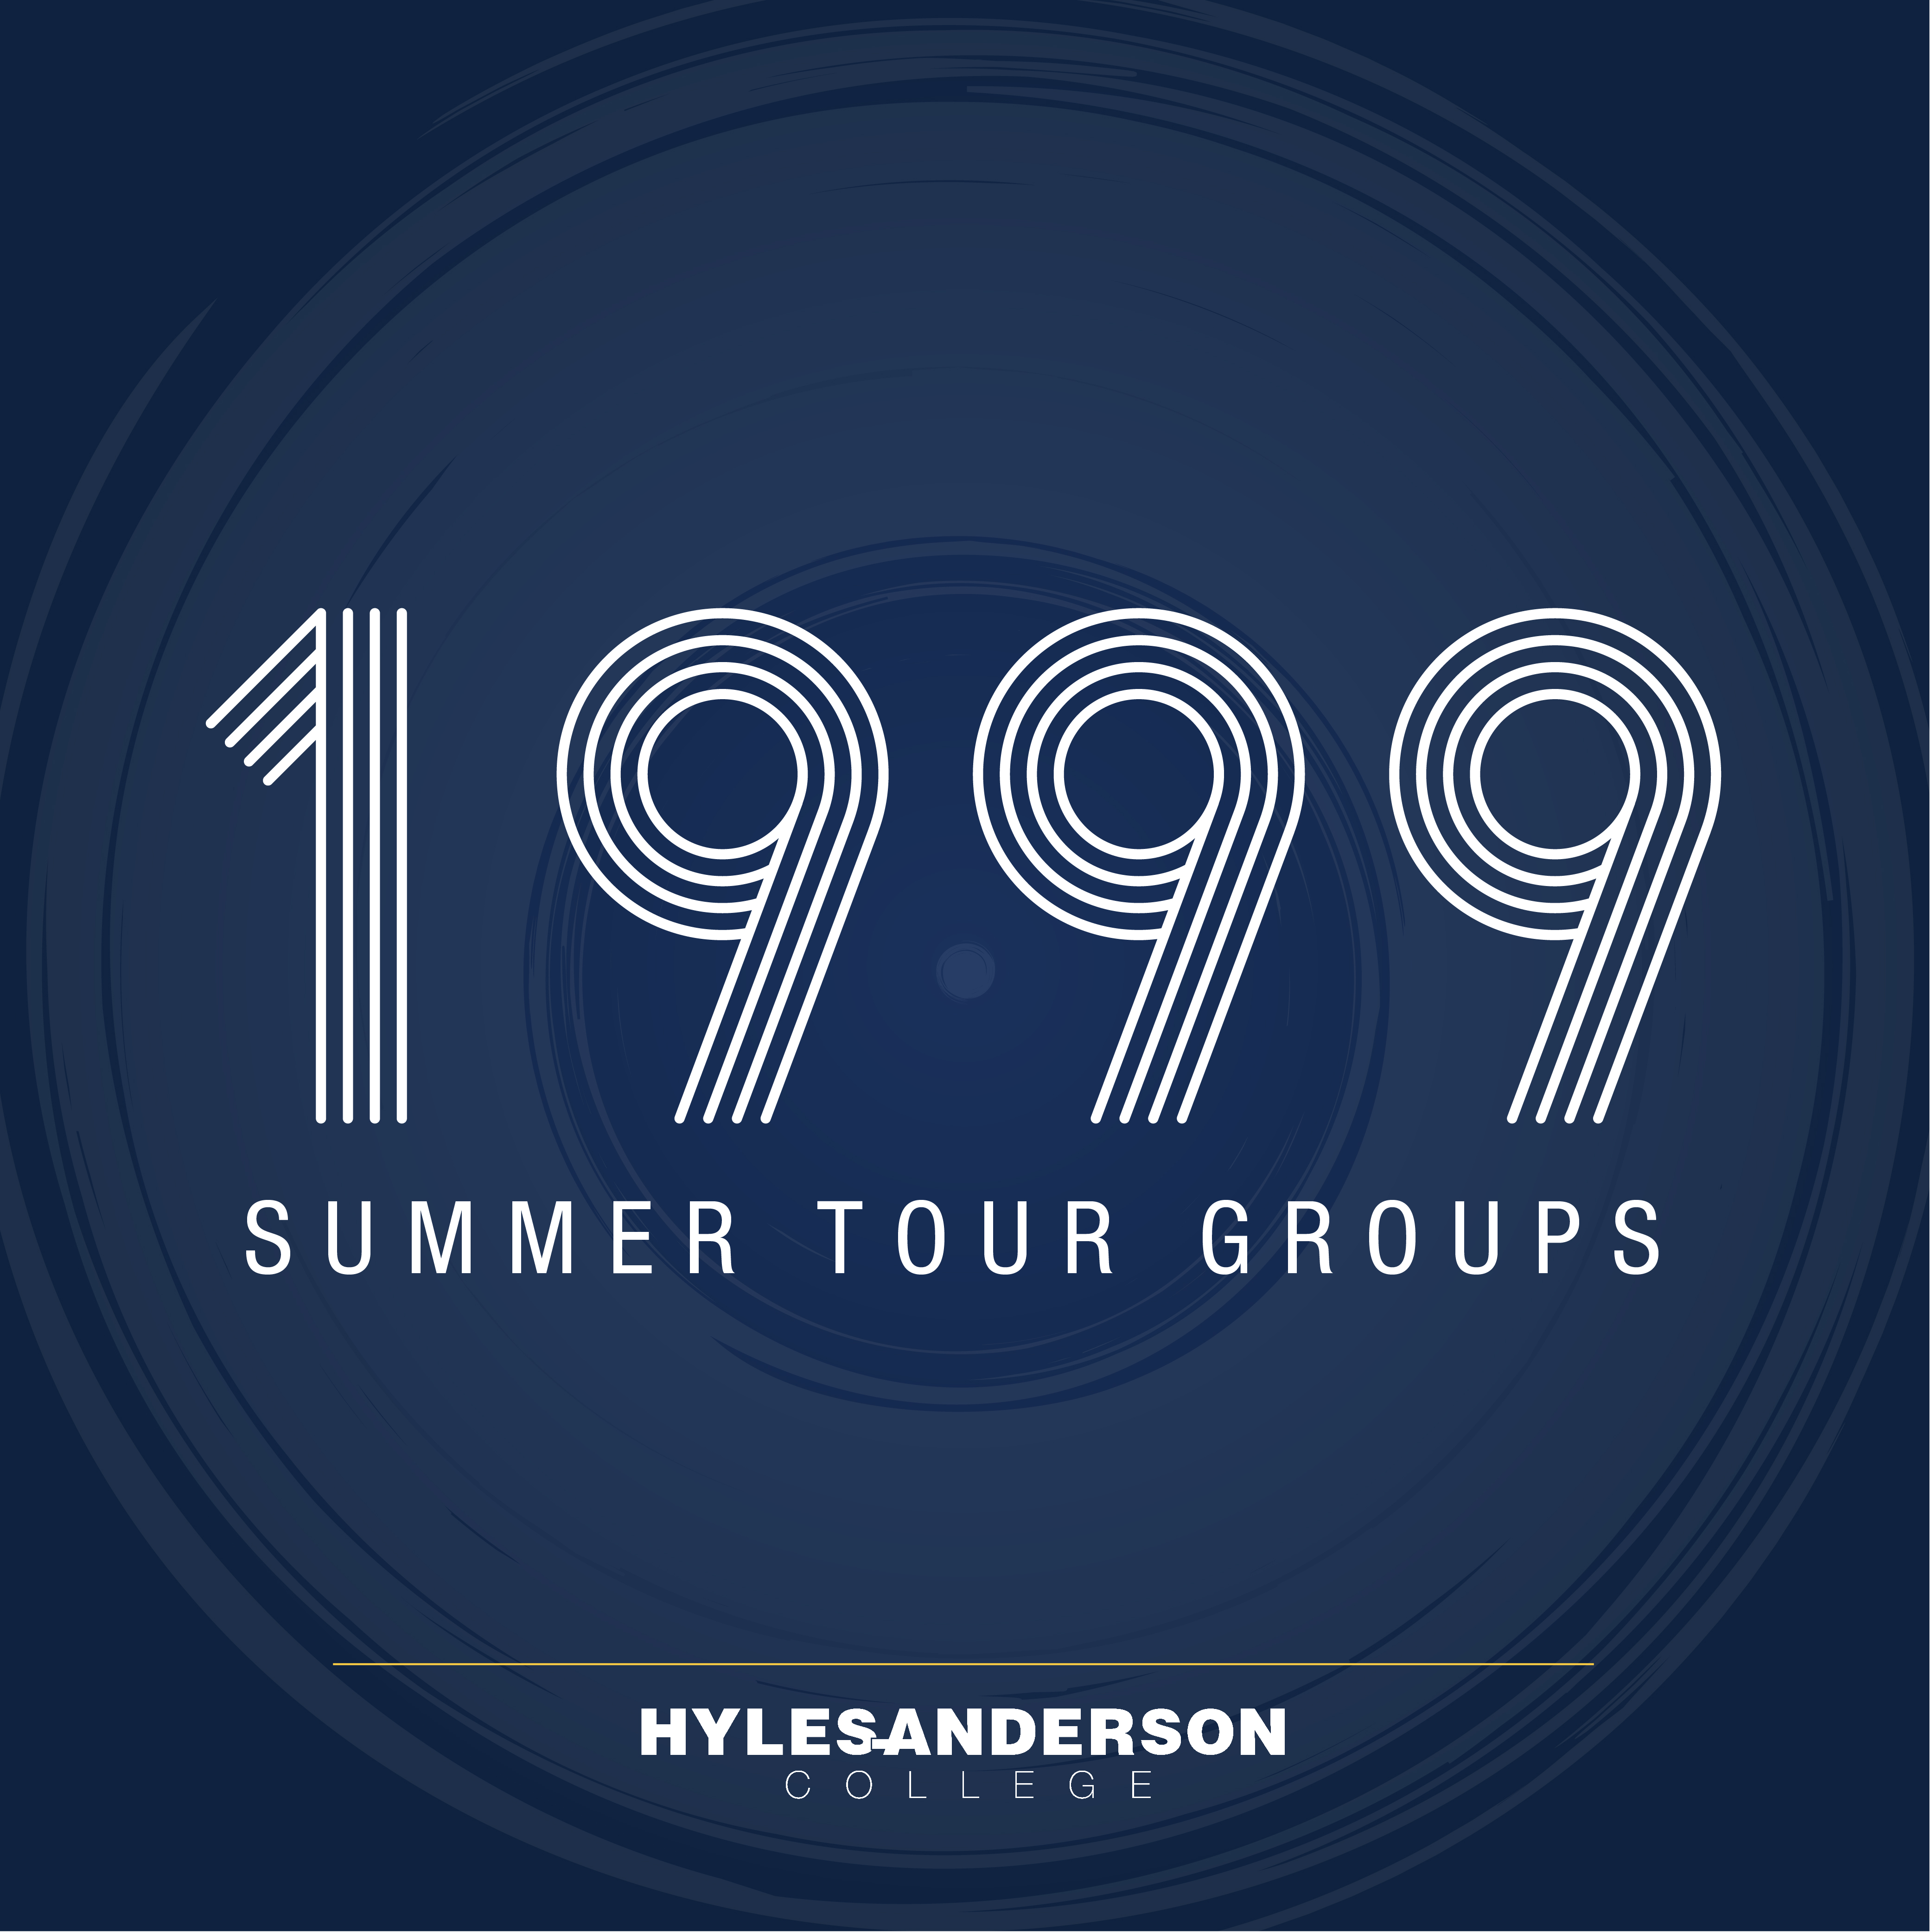 1999 Summer Tour